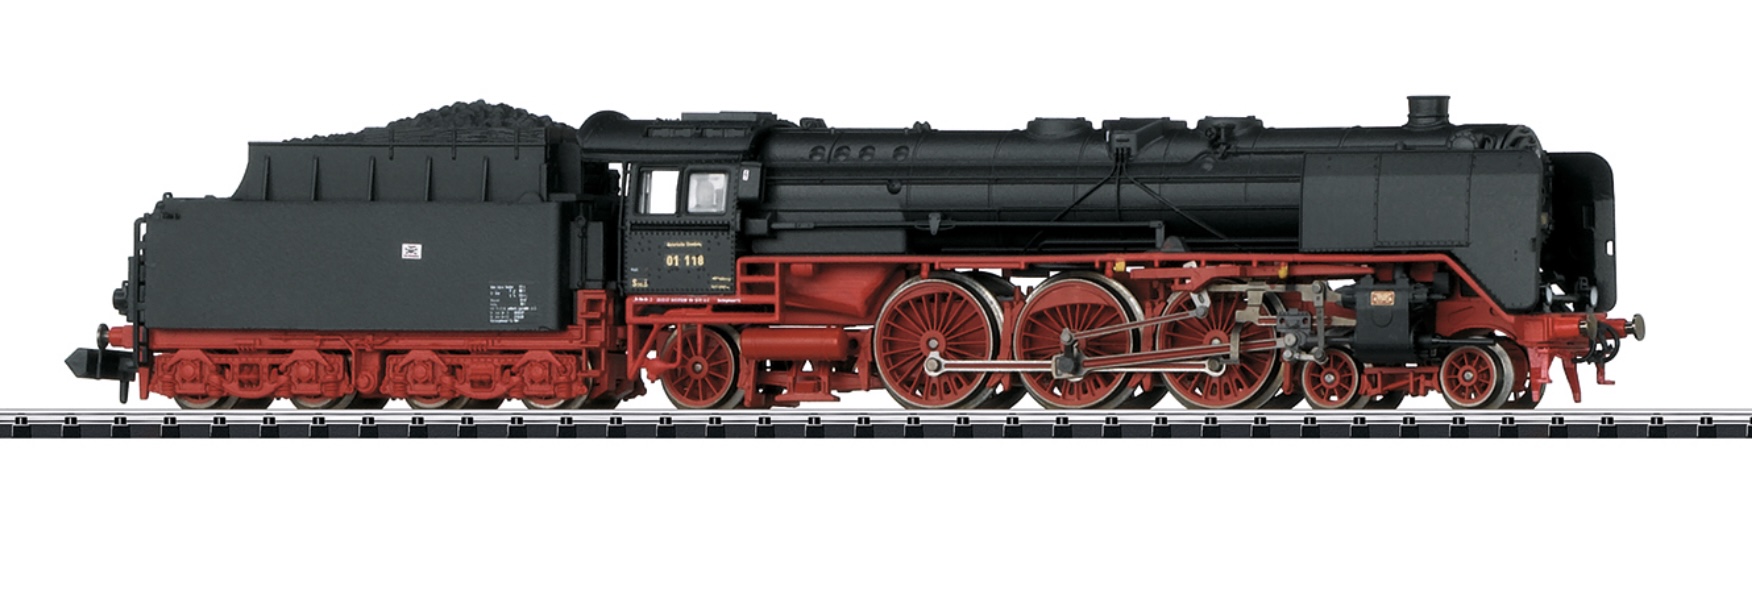 N Scale - Minitrix - 16011 - Locomotive, Steam, 4-6-2 BR 01 - Deutsche Bahn - 01 118